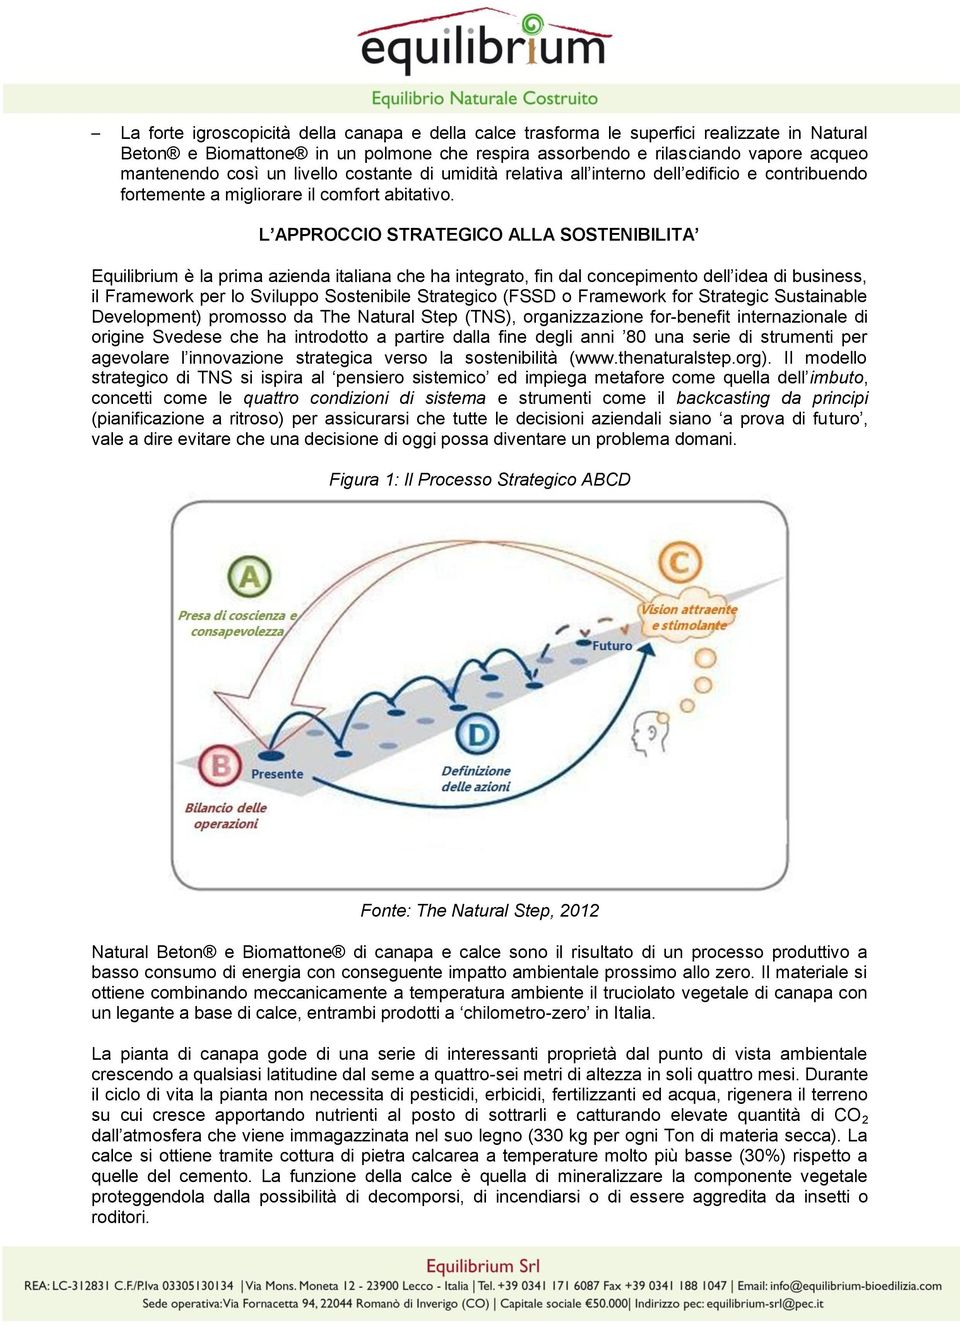 L APPROCCIO STRATEGICO ALLA SOSTENIBILITA Equilibrium è la prima azienda italiana che ha integrato, fin dal concepimento dell idea di business, il Framework per lo Sviluppo Sostenibile Strategico